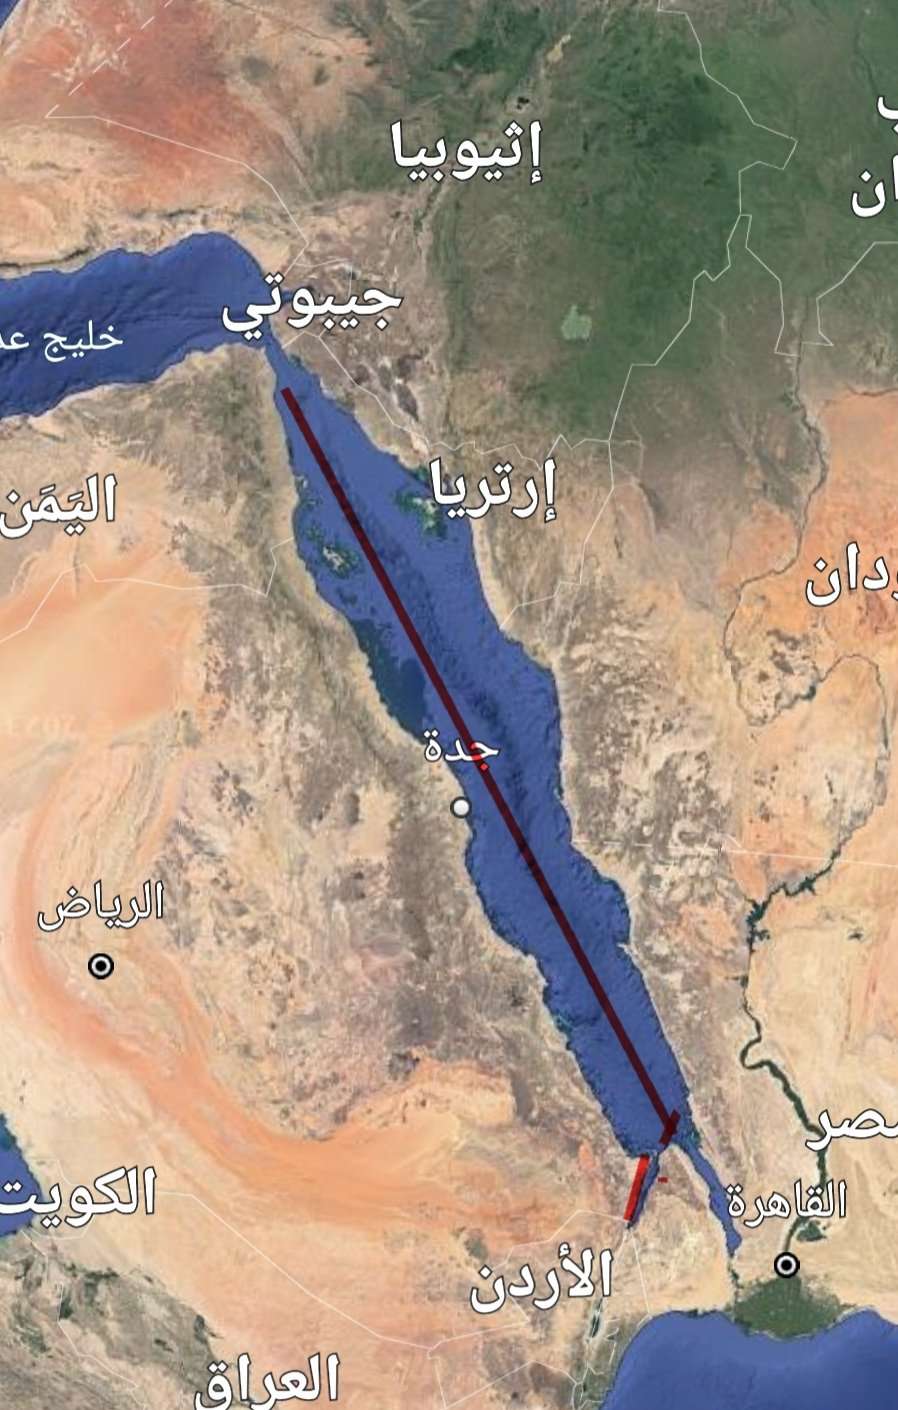 اعلامي عسكري يفجر مفاجئة من العيار الثقيل ويكشف عن تواجد اسرائيلي بهذه المحافظة اليمنية(ليست سقطرى)